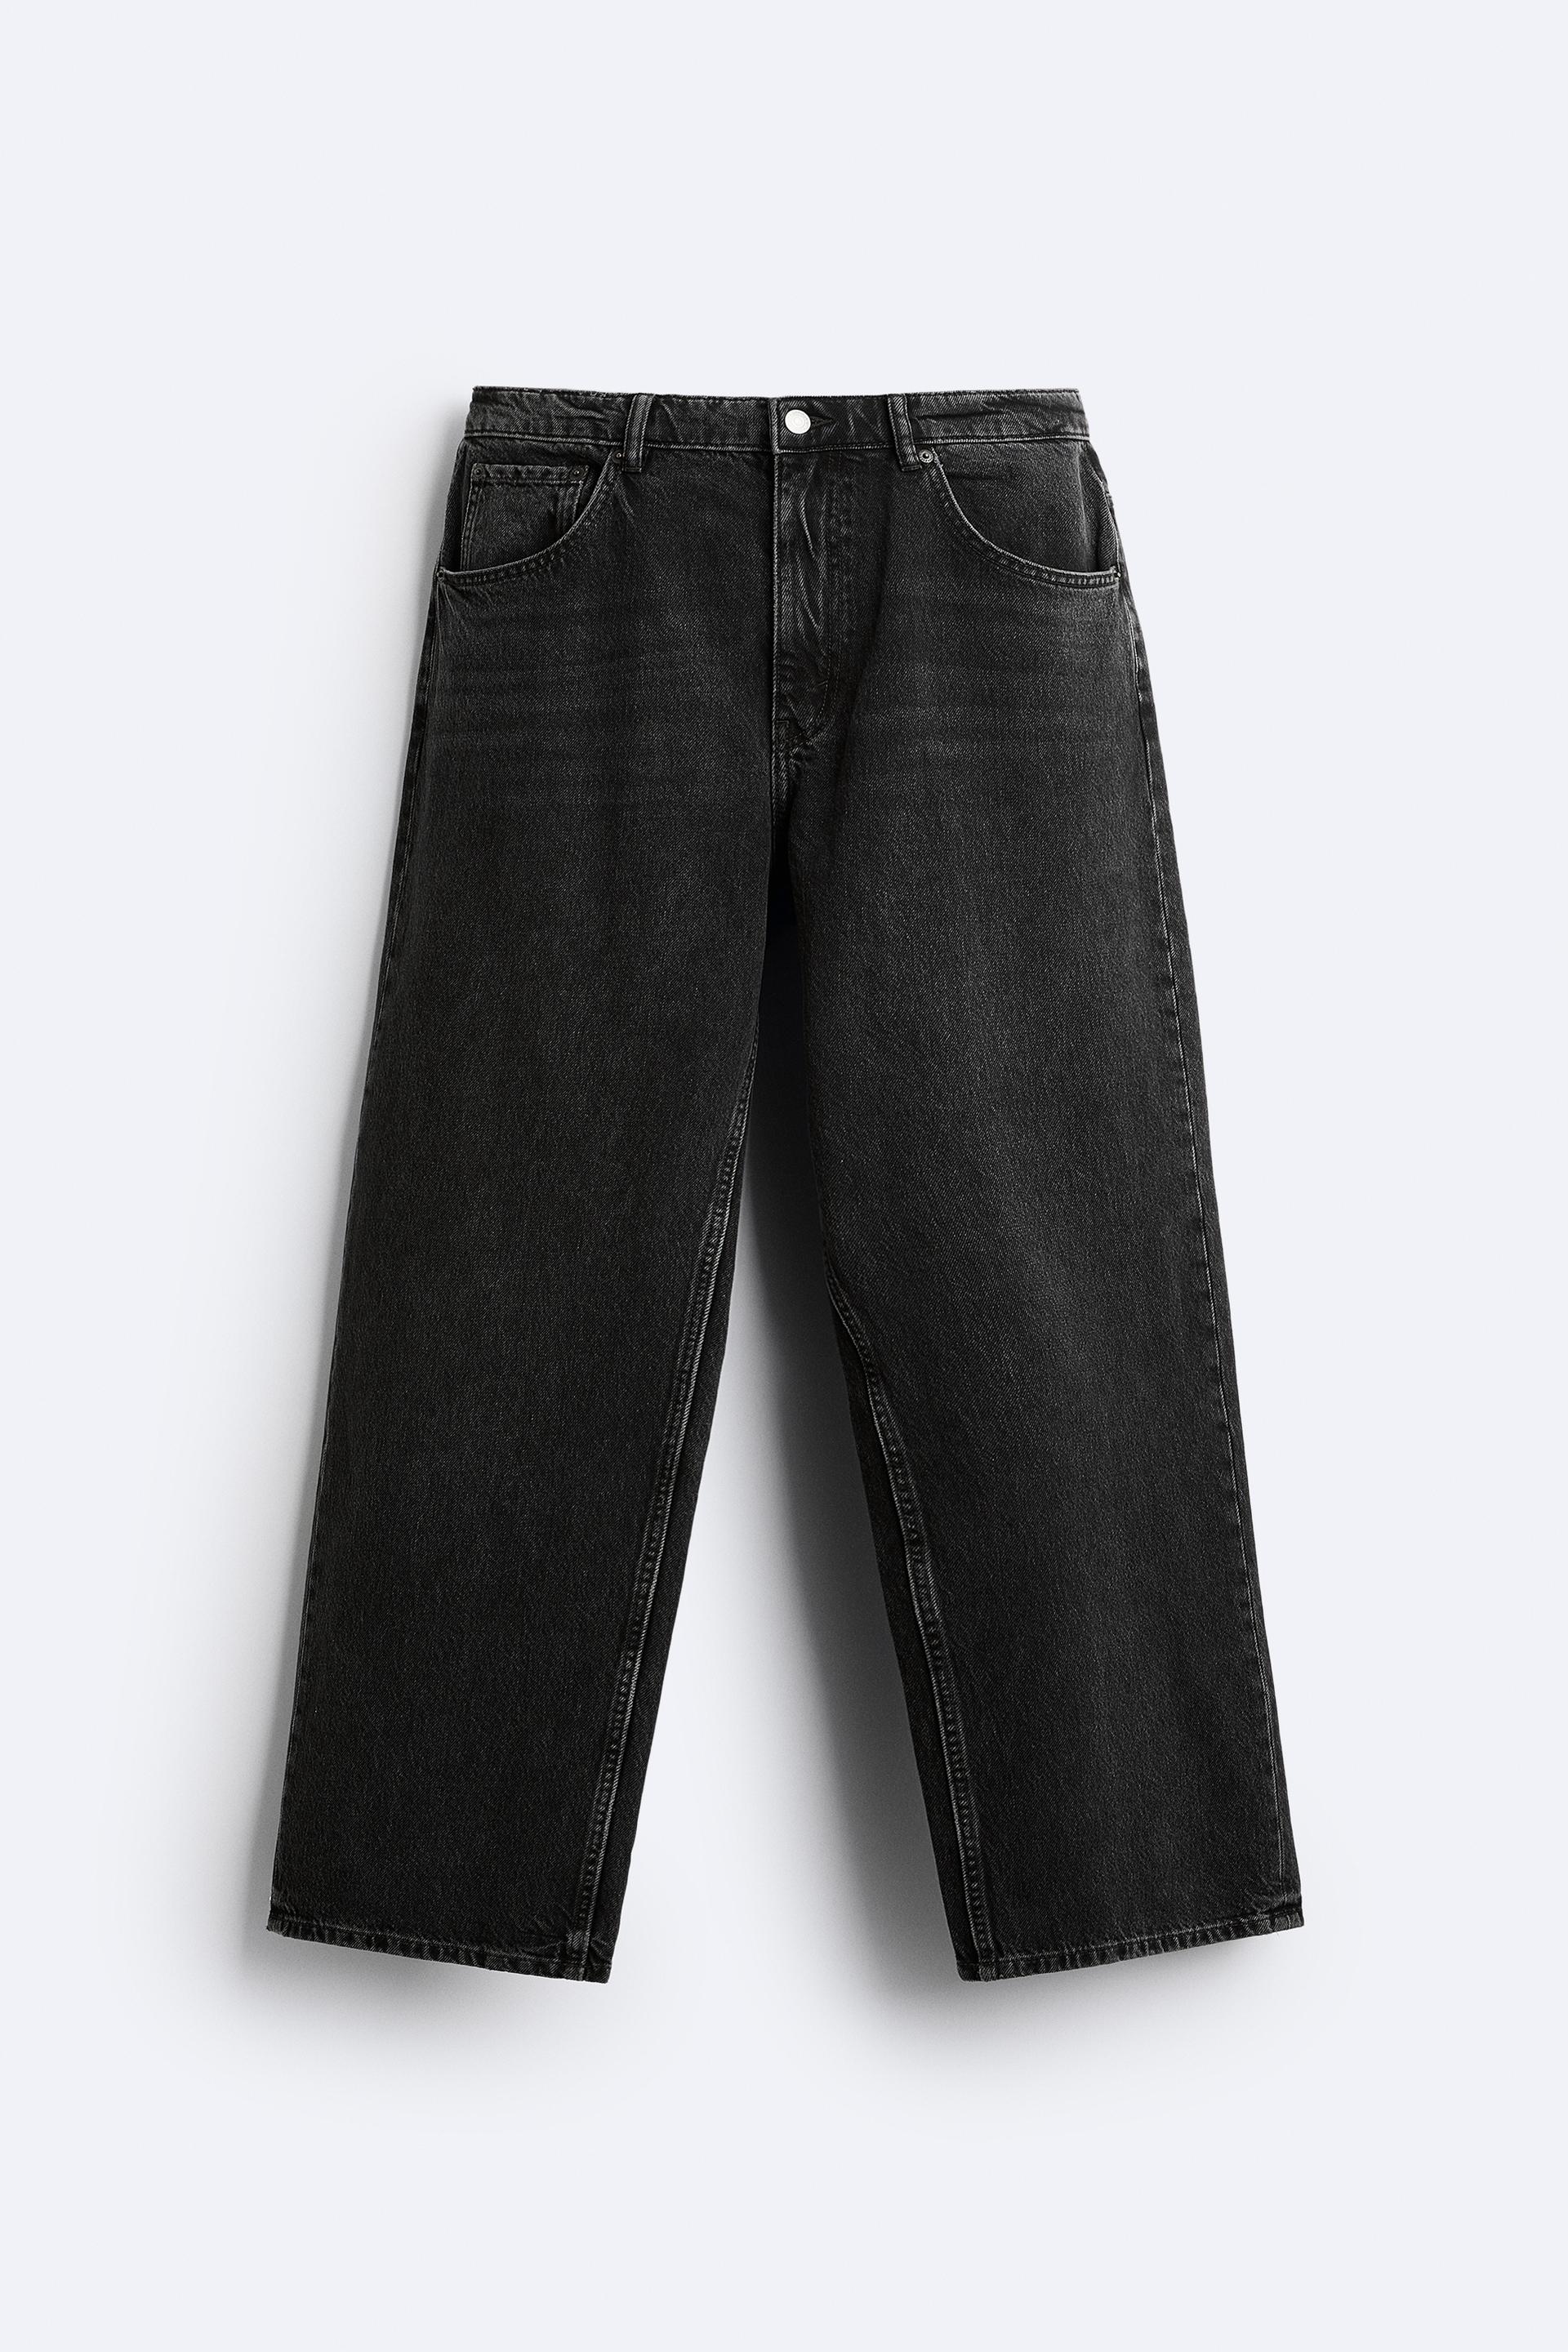 Zara, Jeans, Zara Mens Utility Pocket Jeans Waist 32